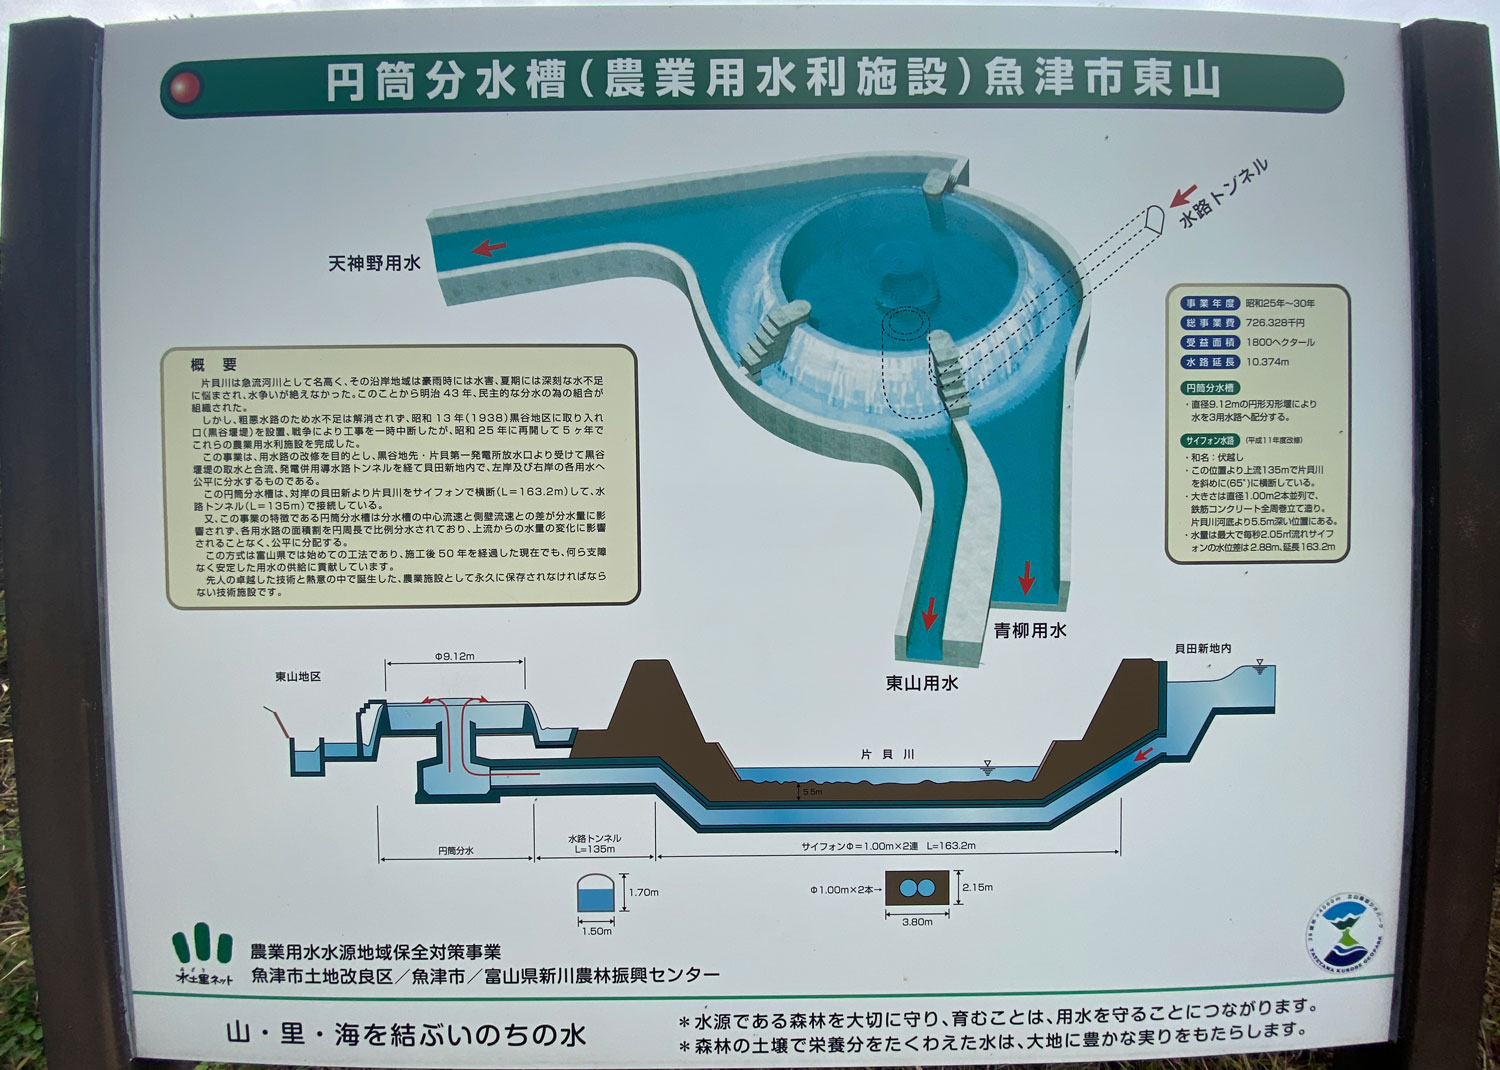 魚津市にある東山円筒分水槽(ひがしやまえんとうぶんすいそう)の仕組み図